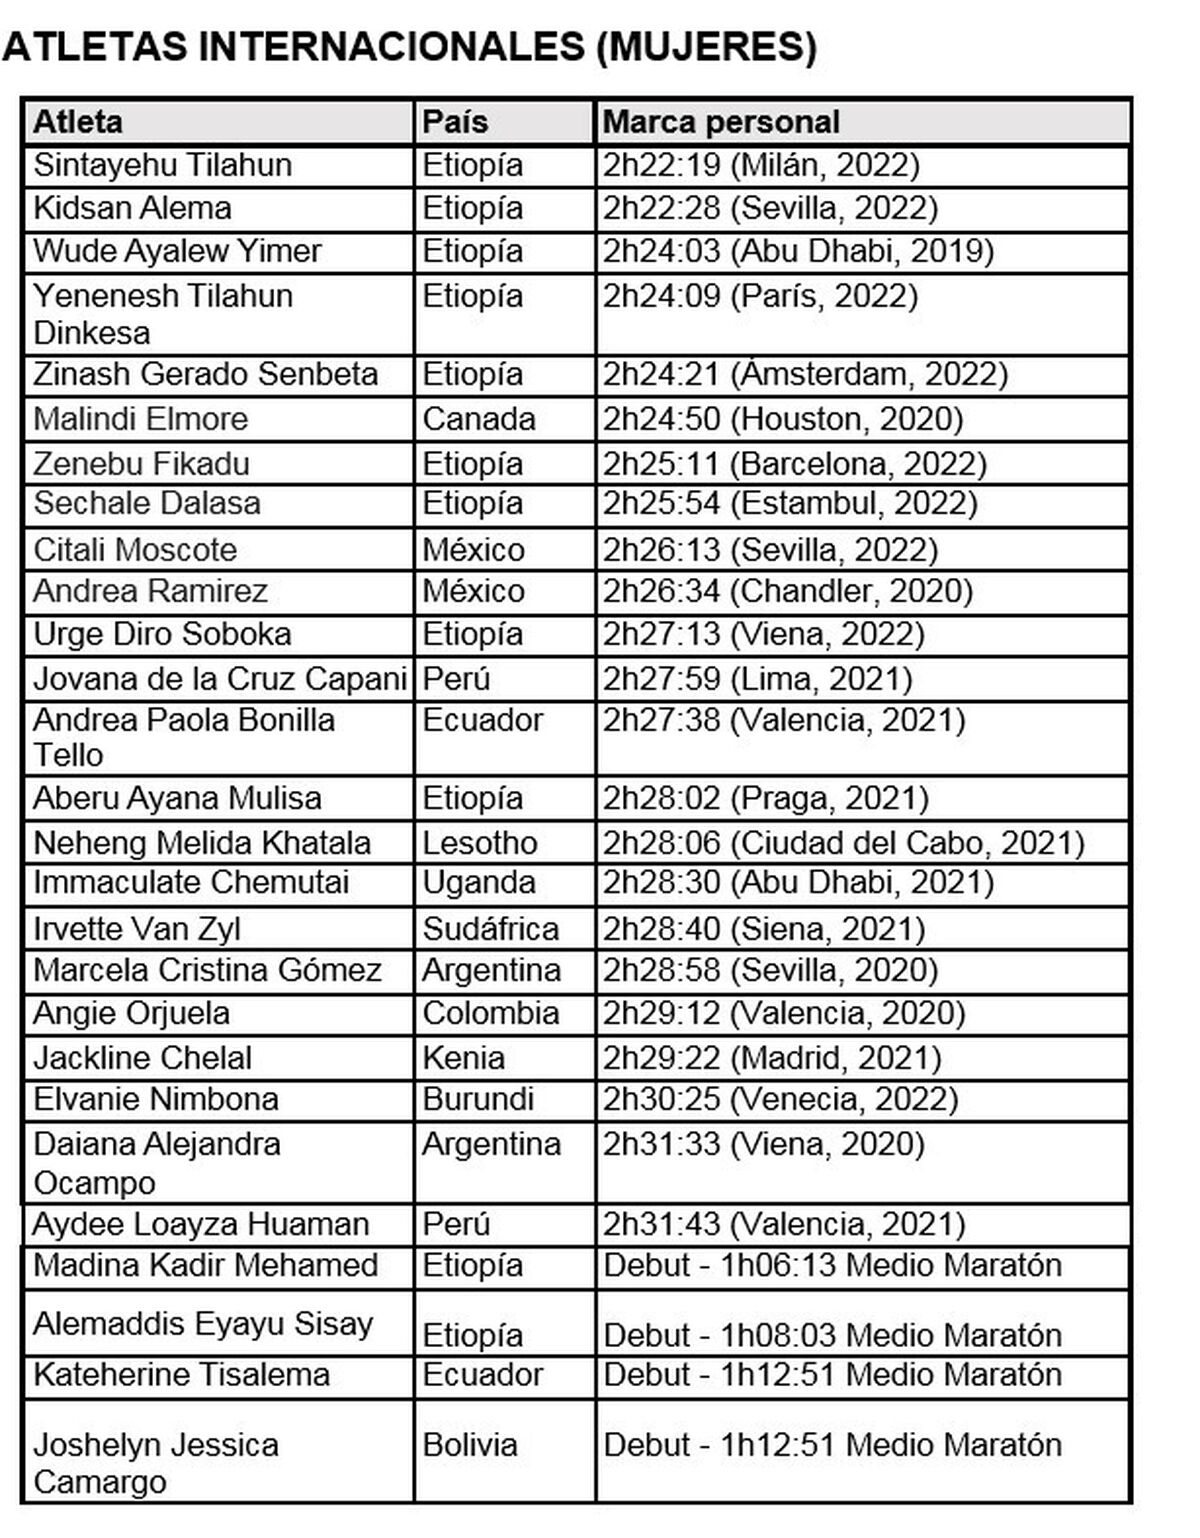 La tabla de las atletas más destacadas del Zurich Maratón de Sevilla.